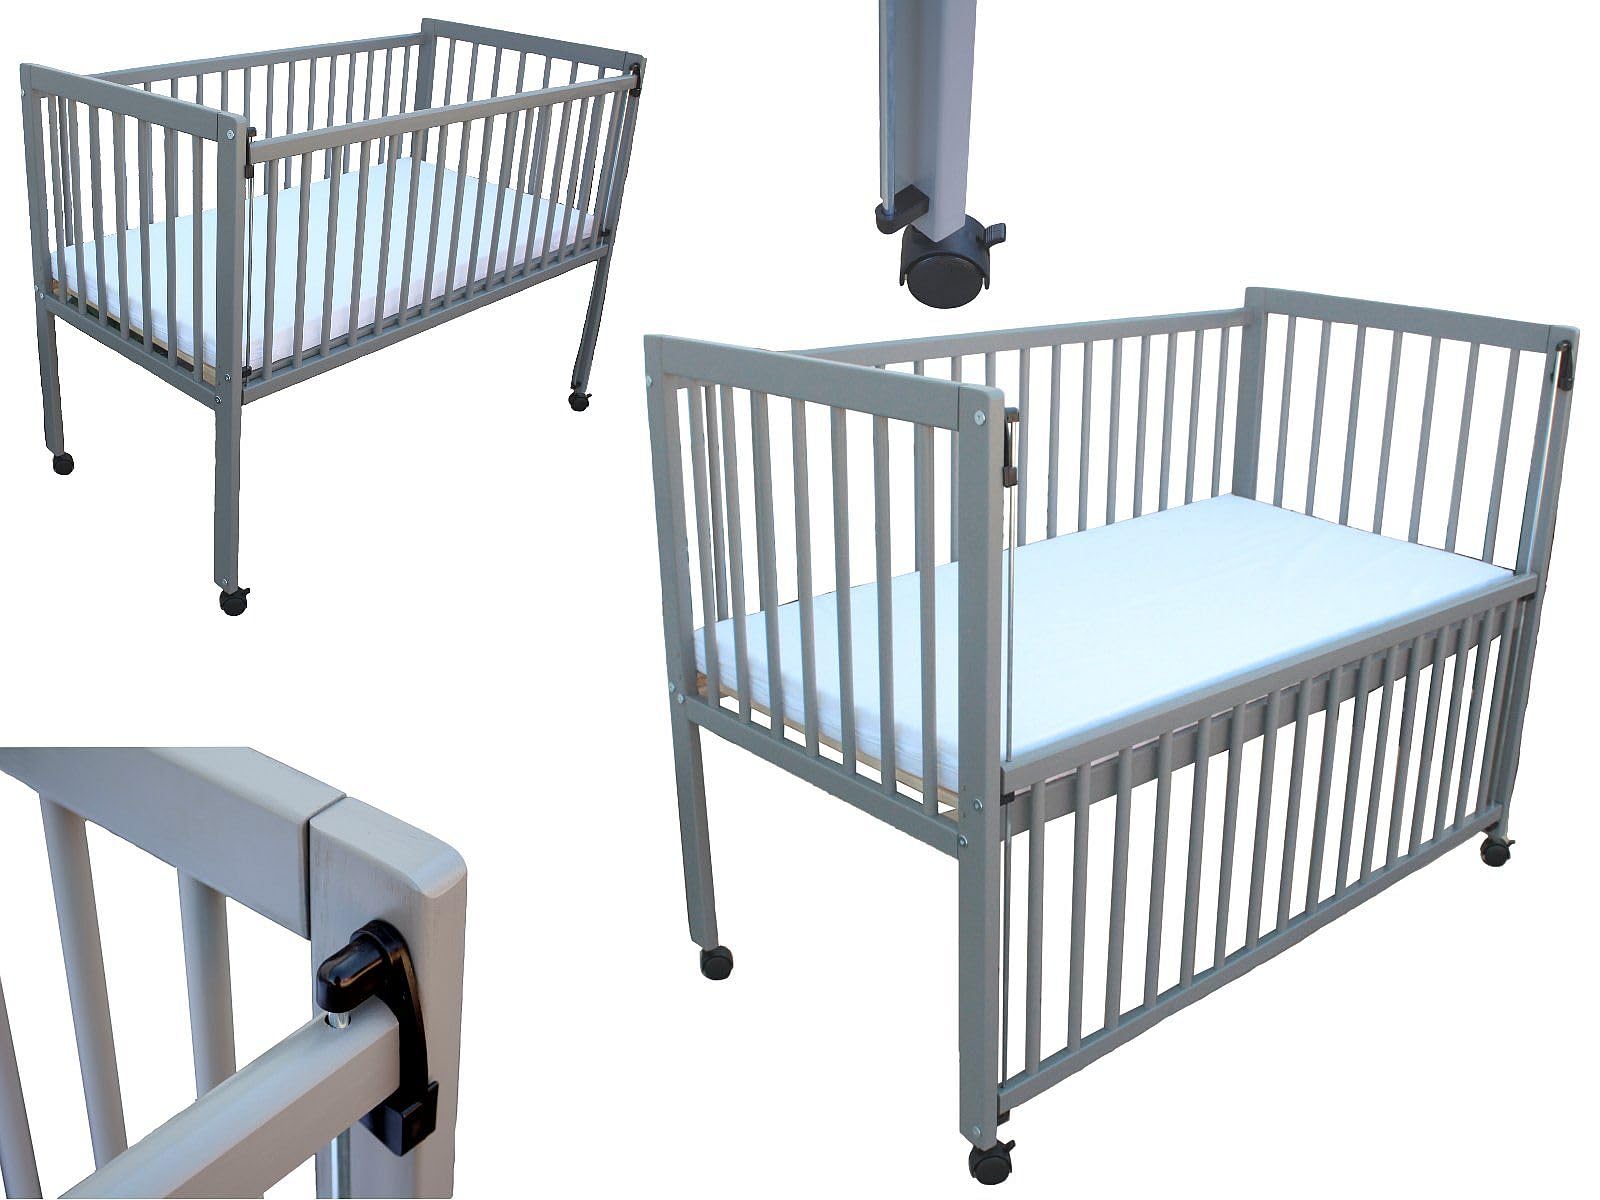 Micoland Kinderbett/Beistellbett/Babybett 2in1 120x60cm mit Matratze grau